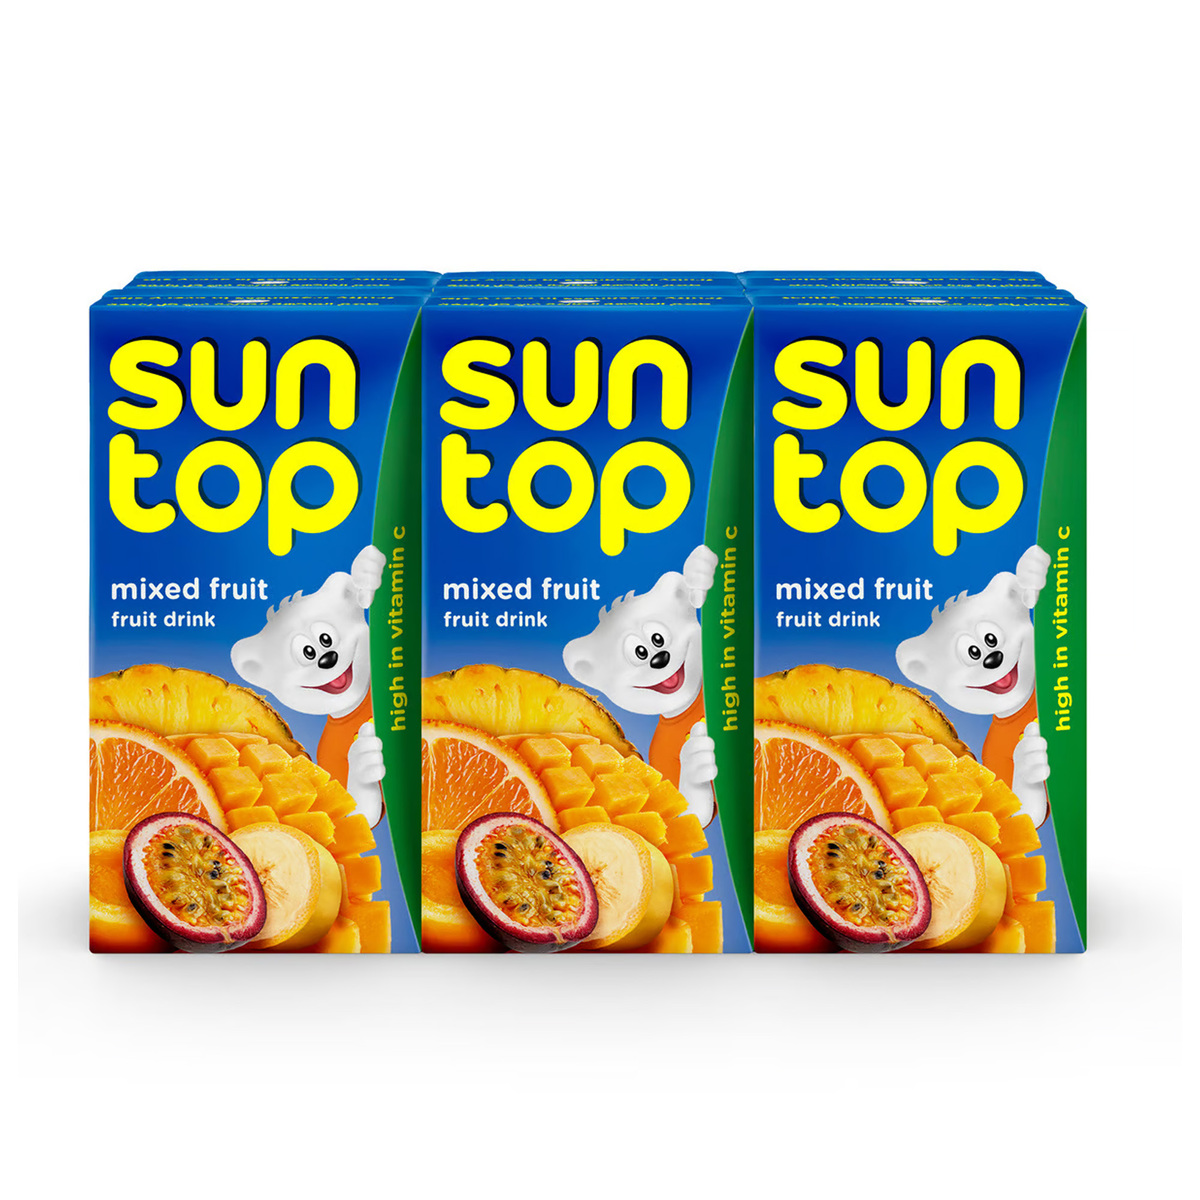 Suntop Mixed Fruit Drink 6 x 125 ml